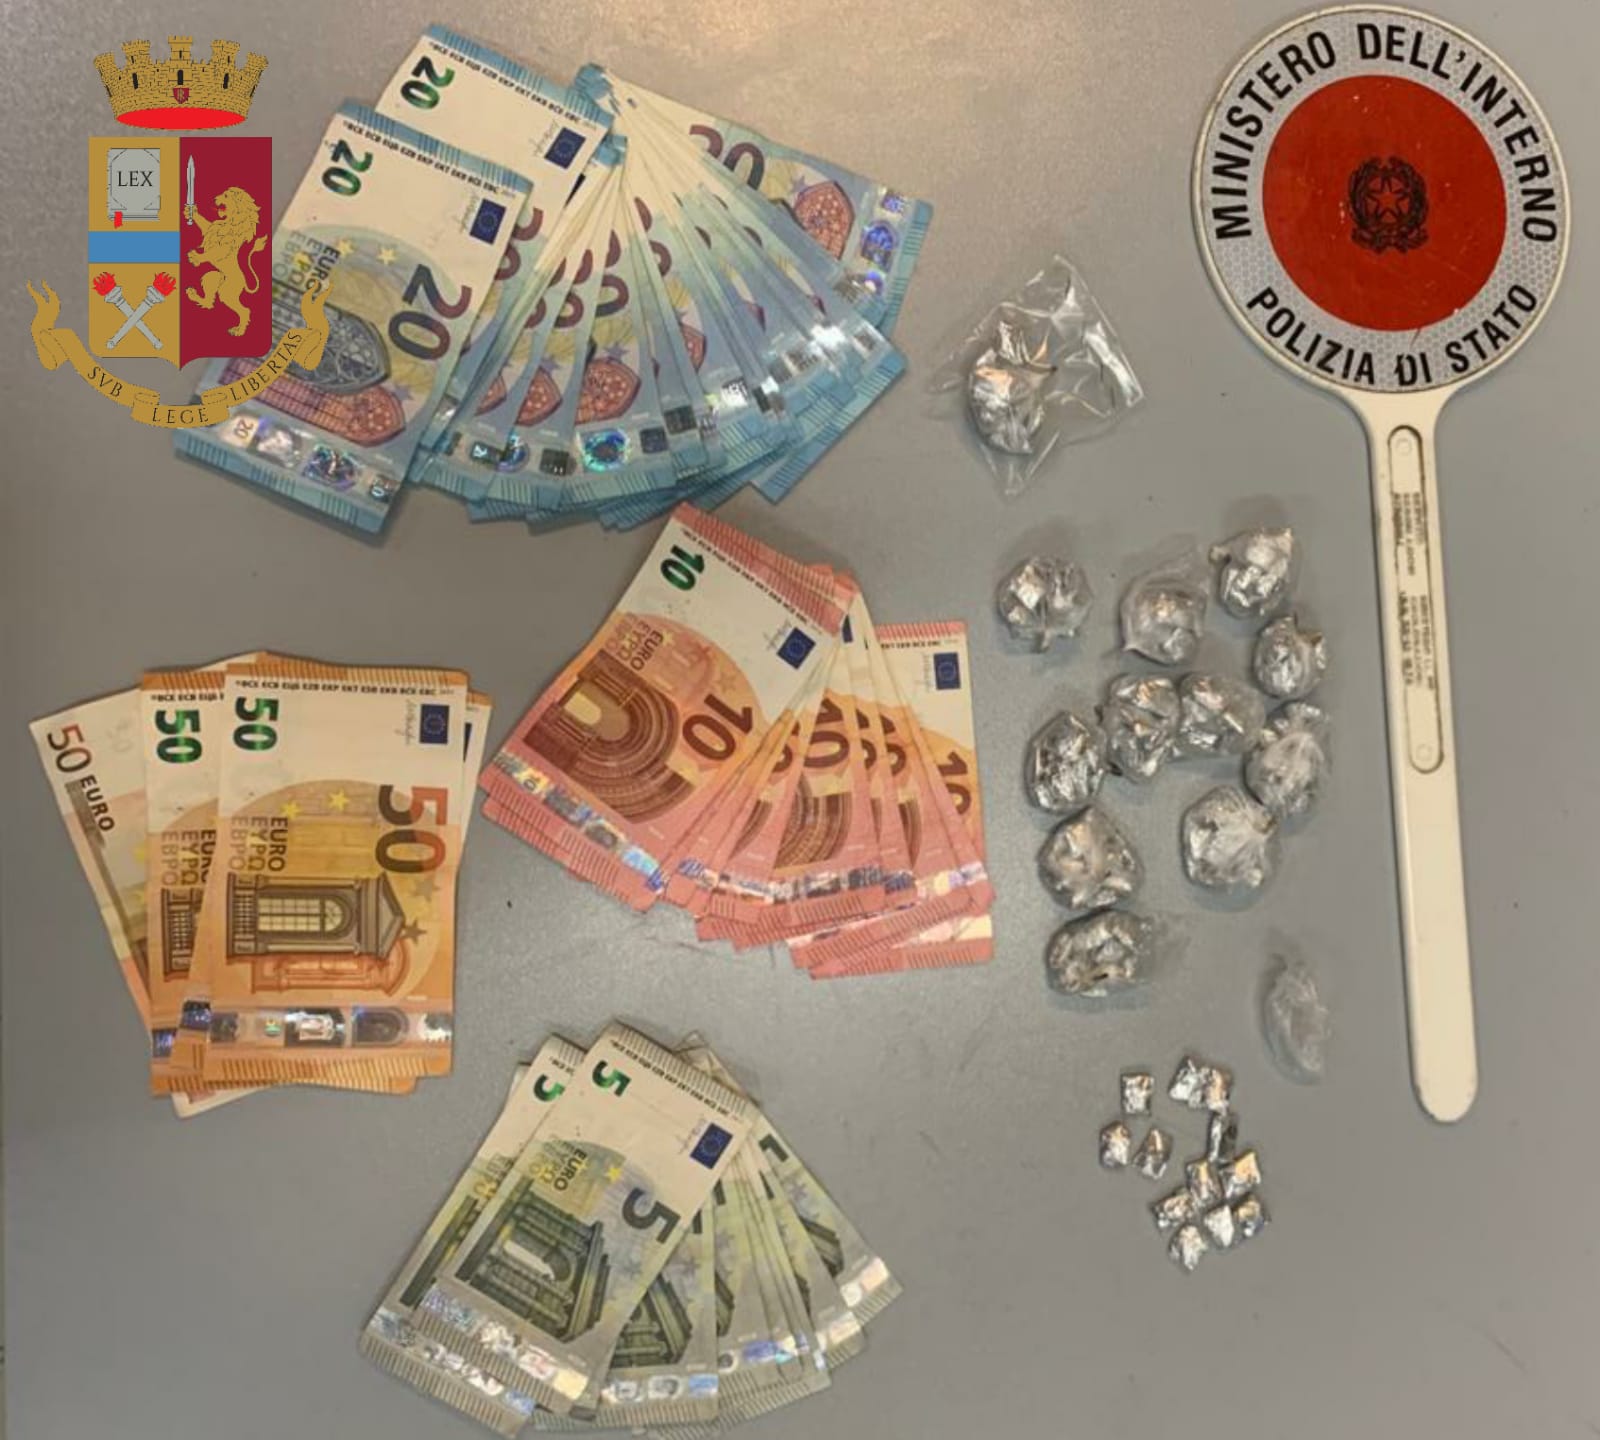 Milano: la Polizia di Stato arresta 7 spacciatori e sequestra oltre mezzo chilo di cocaina in diversi quartieri della città 2